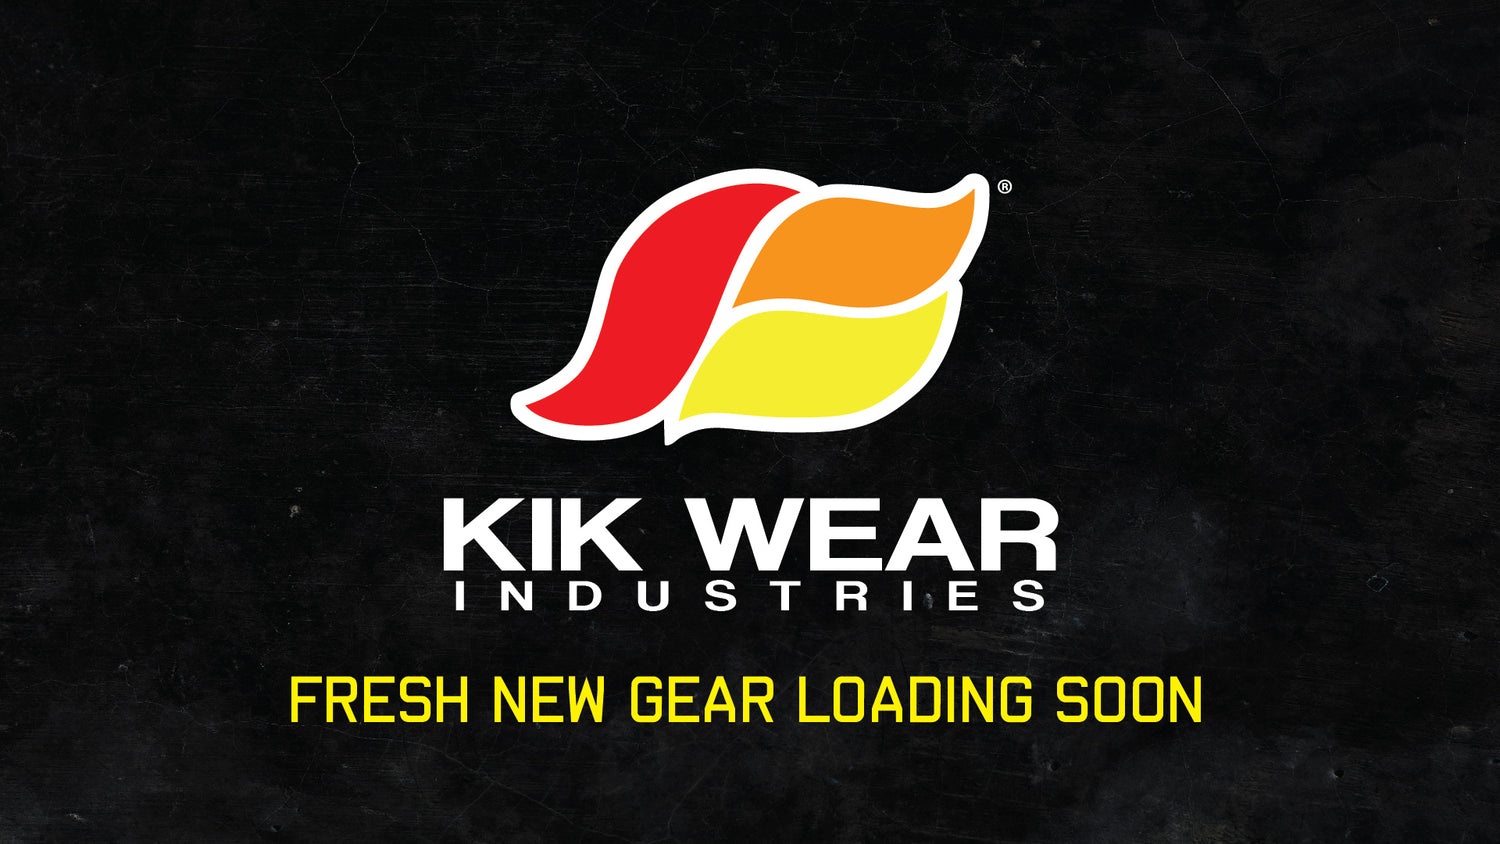 Kikwear Website Fresh new gear coming soon!